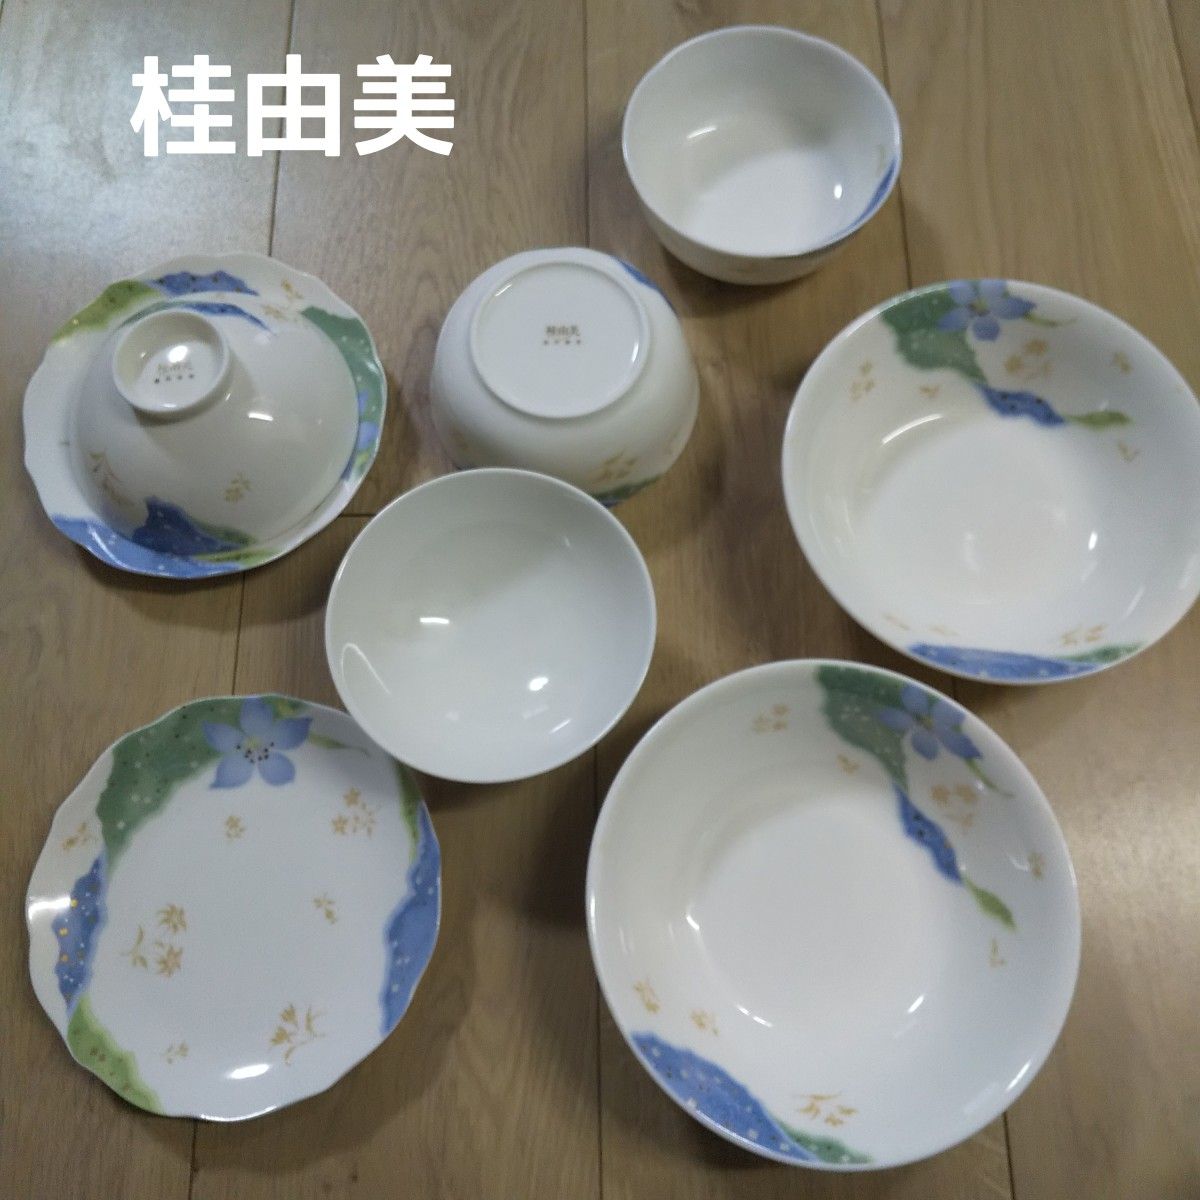 桂由美 yumikatsura 創作華窯 ペア 茶碗 皿 小鉢 中鉢 セット